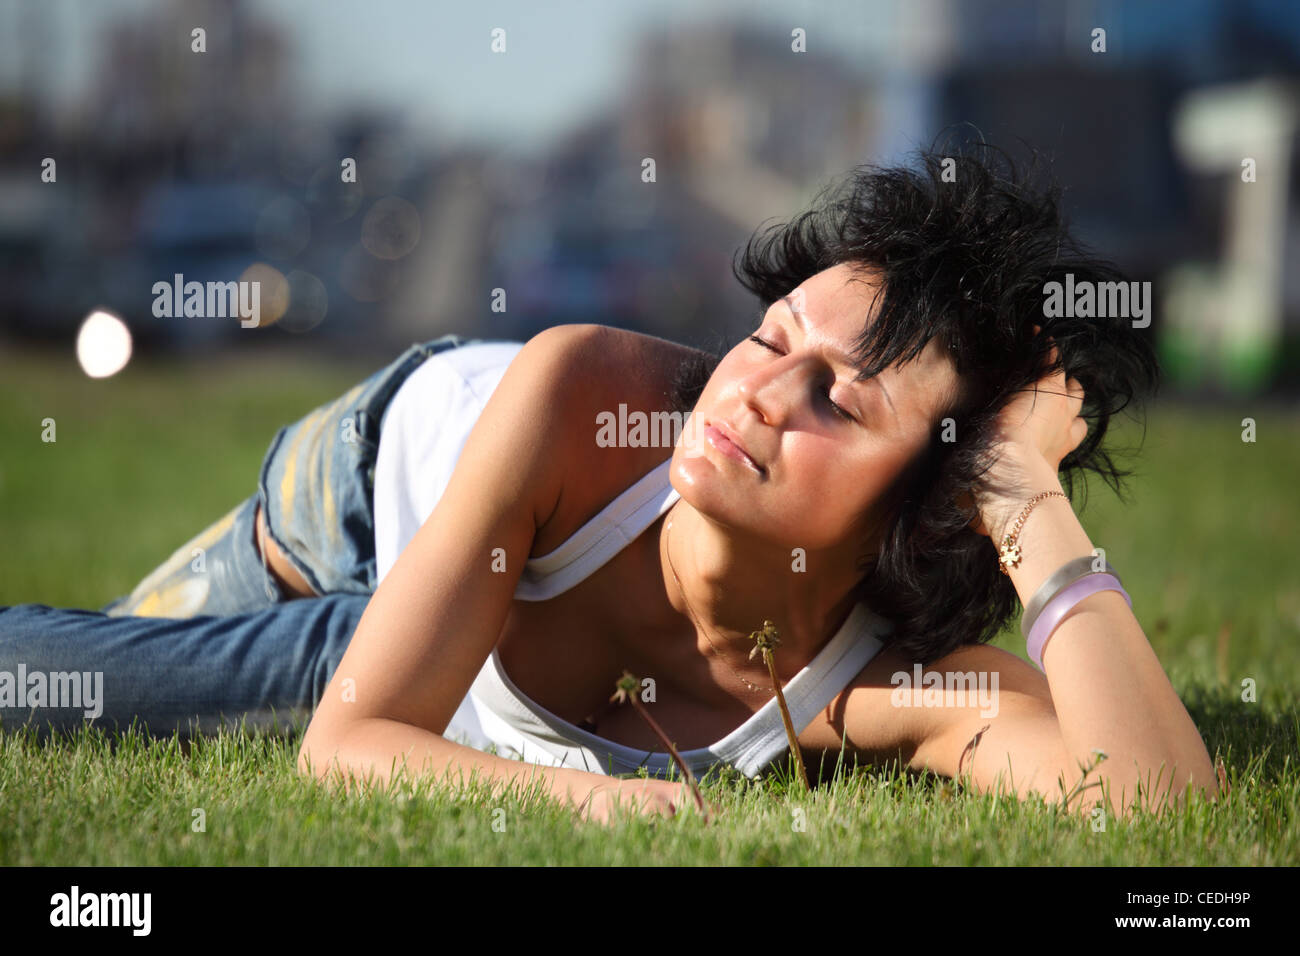 Mädchen liegt auf Rasen an Straße in Stadt Stockfoto